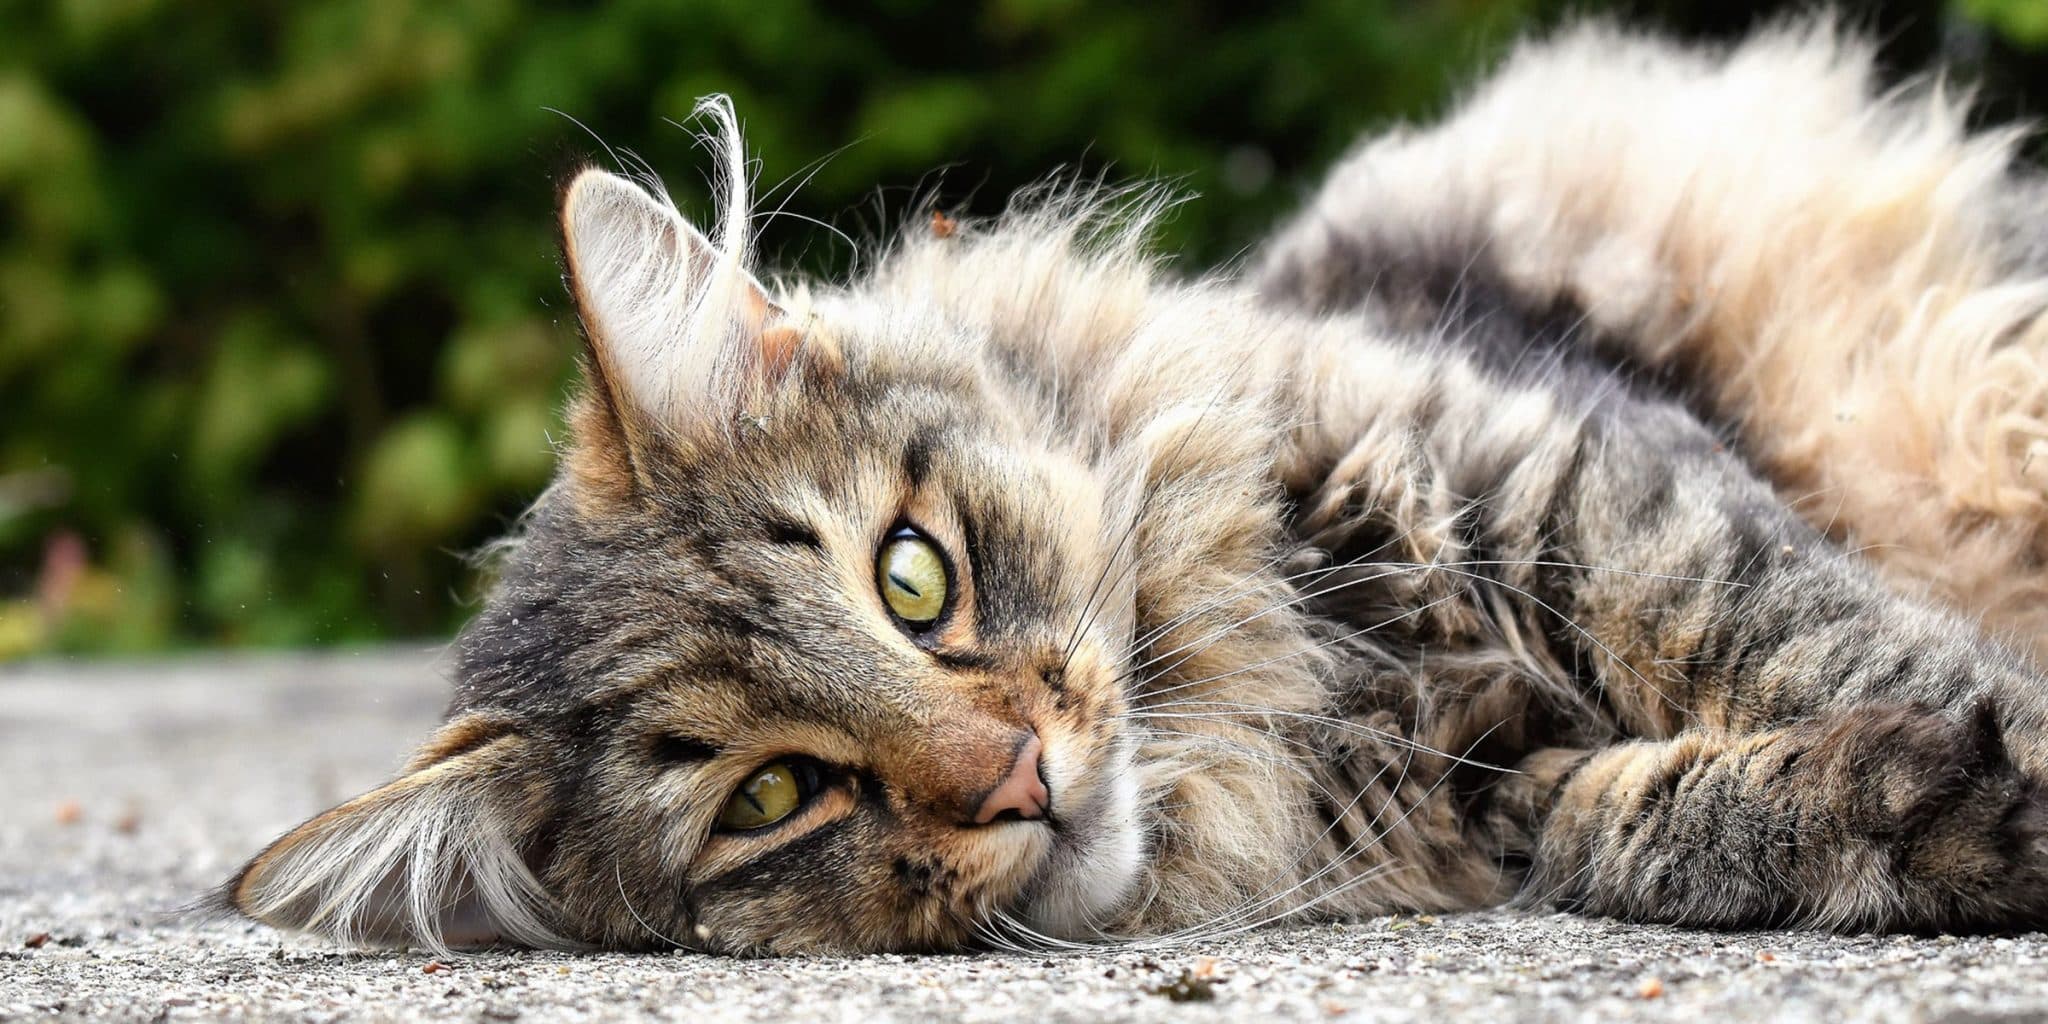 Science in Focus : Reconnaissance des émotions chez les chats